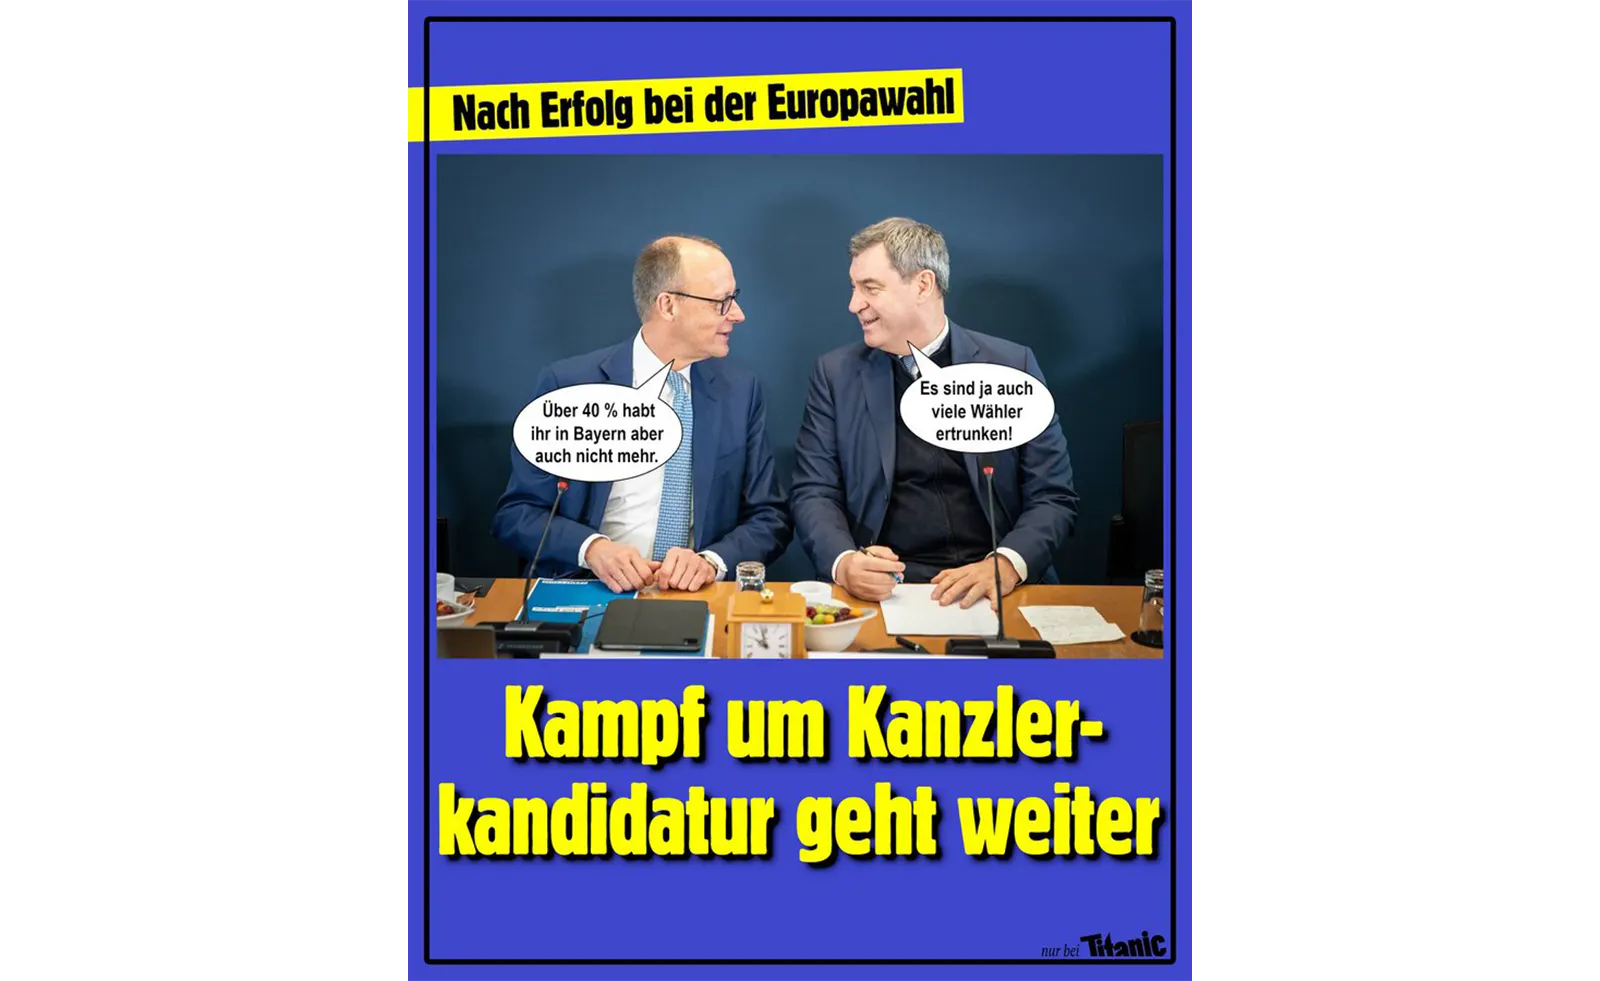 Überschrift "Nach Erfolg bei der Europawahl", Unterschrift "Kampf um Kanzlerkandidatur geht weiter", zu sehen sind Friedrich Merz und Markus Söder. Merz sagt zu Söder: "Über 40 Prozent habt ihr in Bayern aber auch nicht mehr." Söder antwortet: "Es sind ja auch viele Wähler ertrunken!"